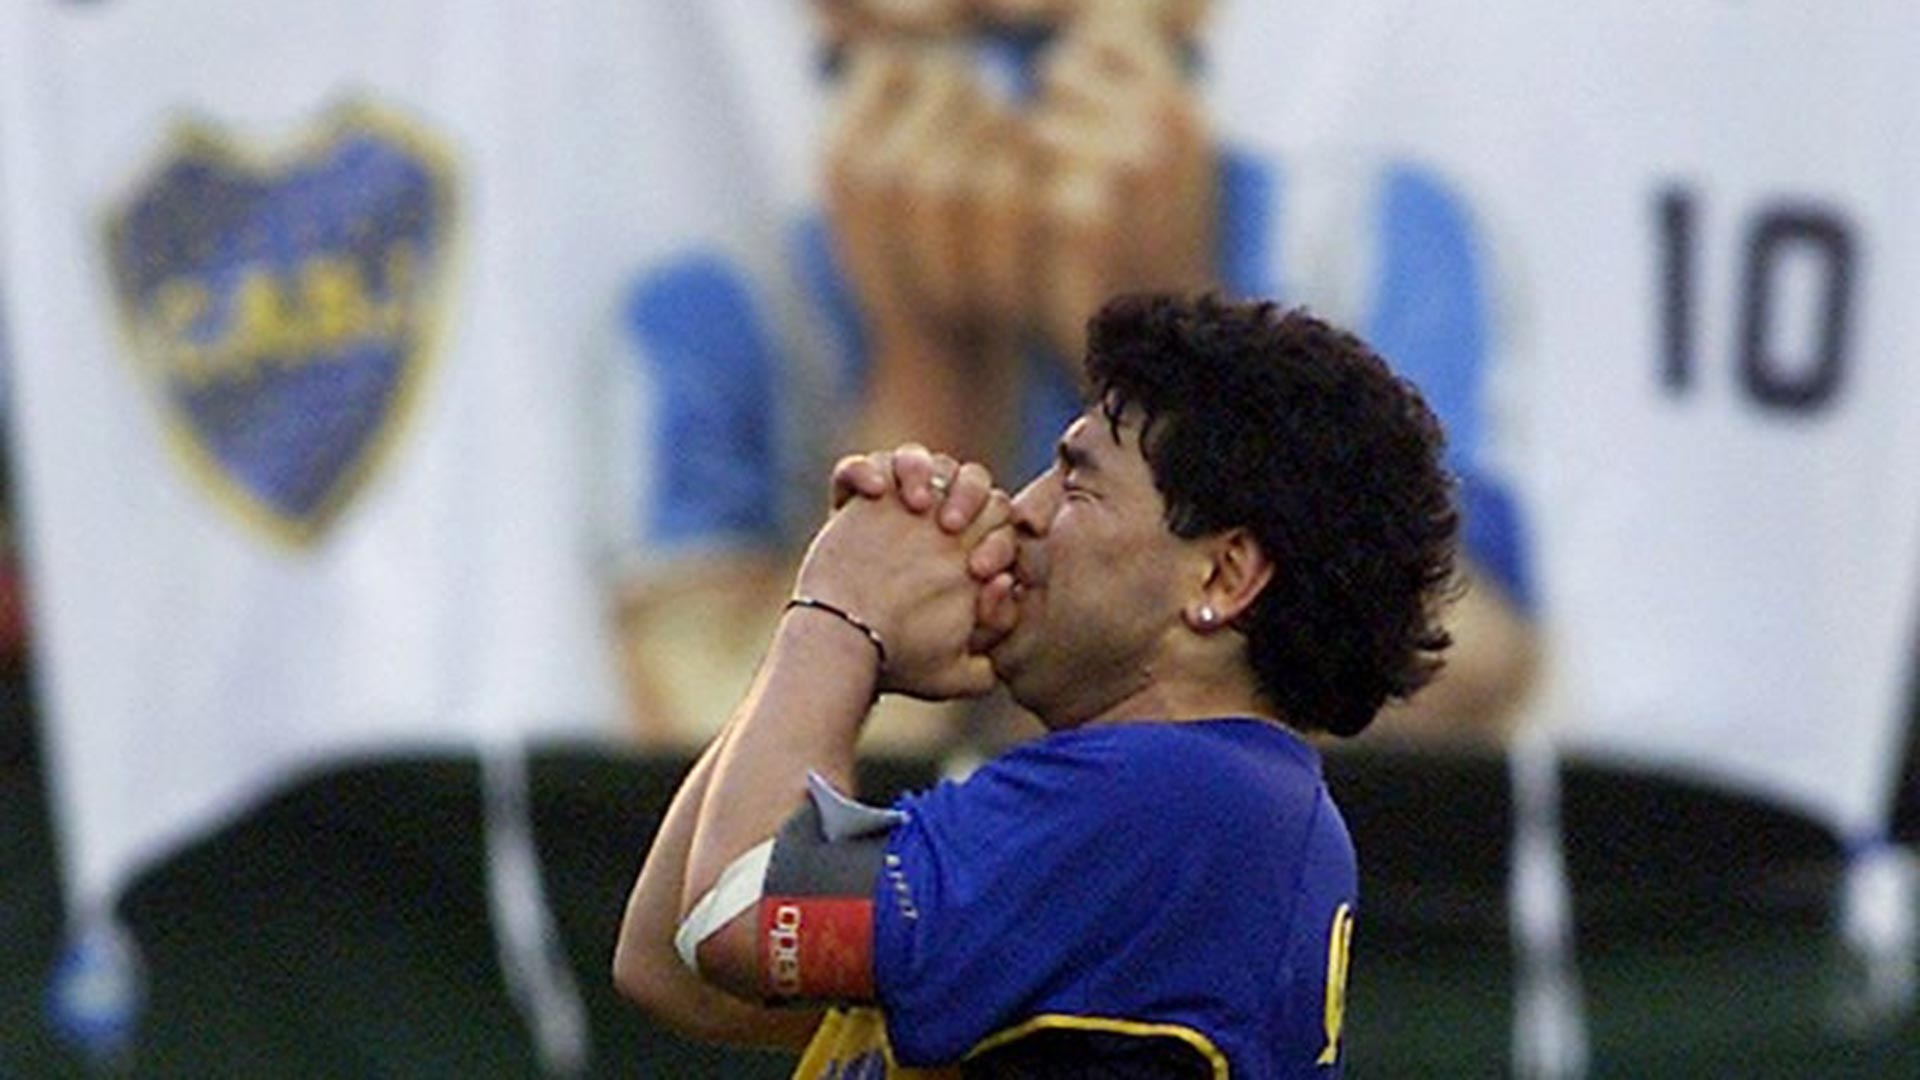 Foto de archivo de la leyenda del fútbol Diego Maradona durante su partido despedida en el estadio de Boca Juniors en Buenos Aires. Nov 10, 2001. (Foto: Reuters)